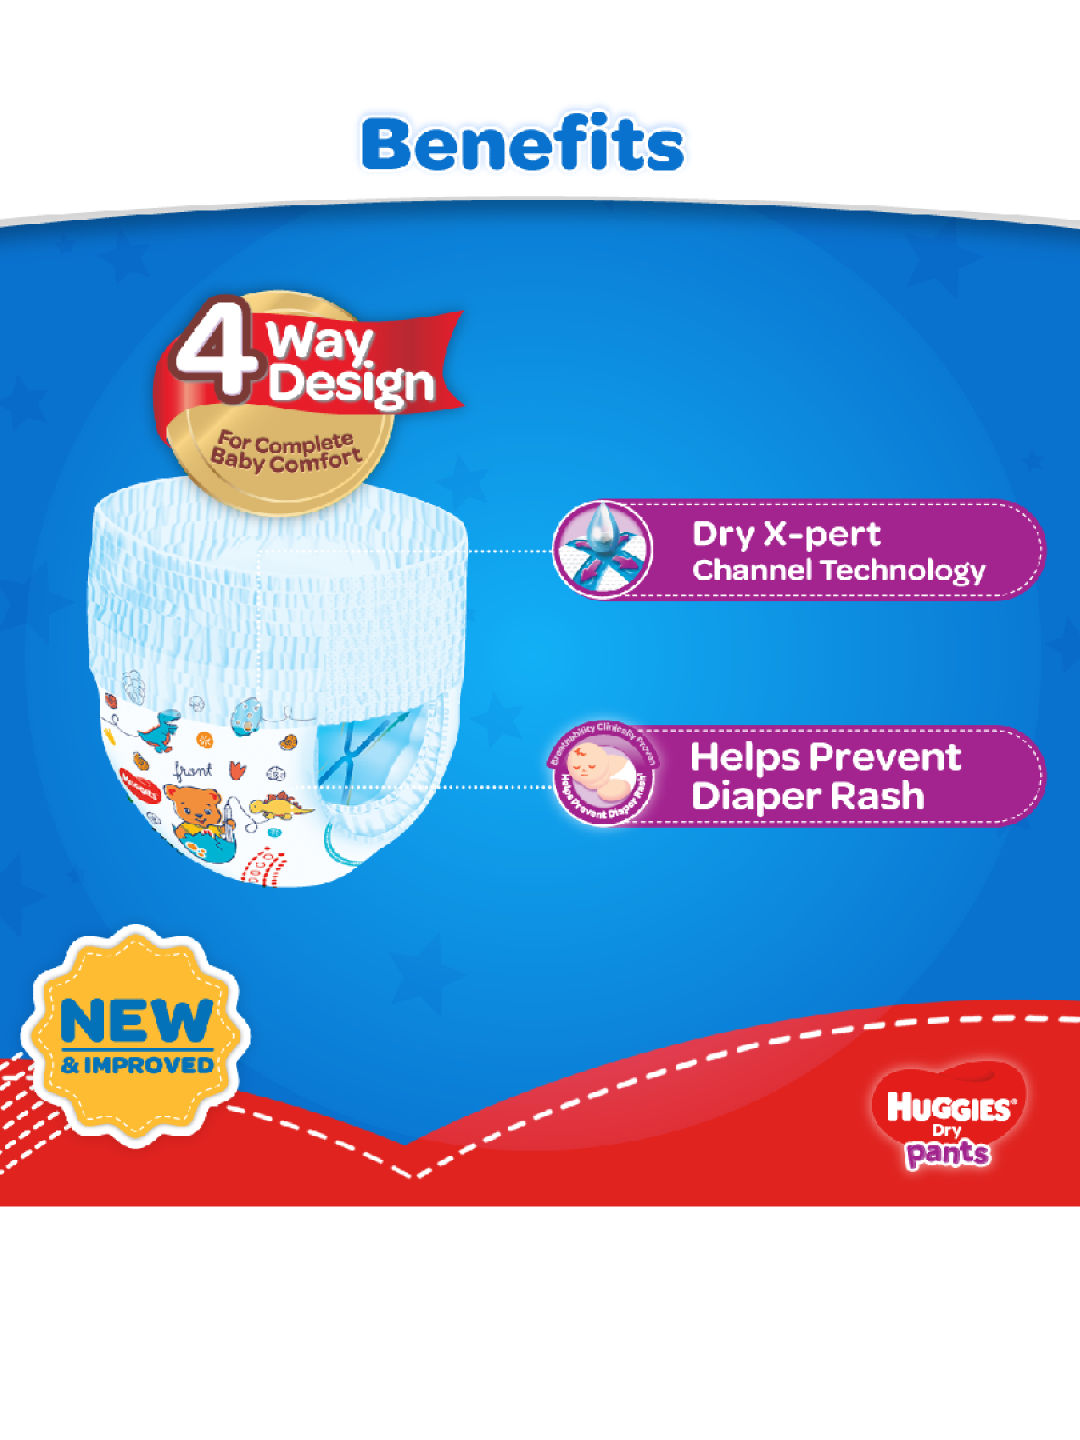 Huggies snug and dry size 3: Huggies Diapers Distribution, XXL Bag